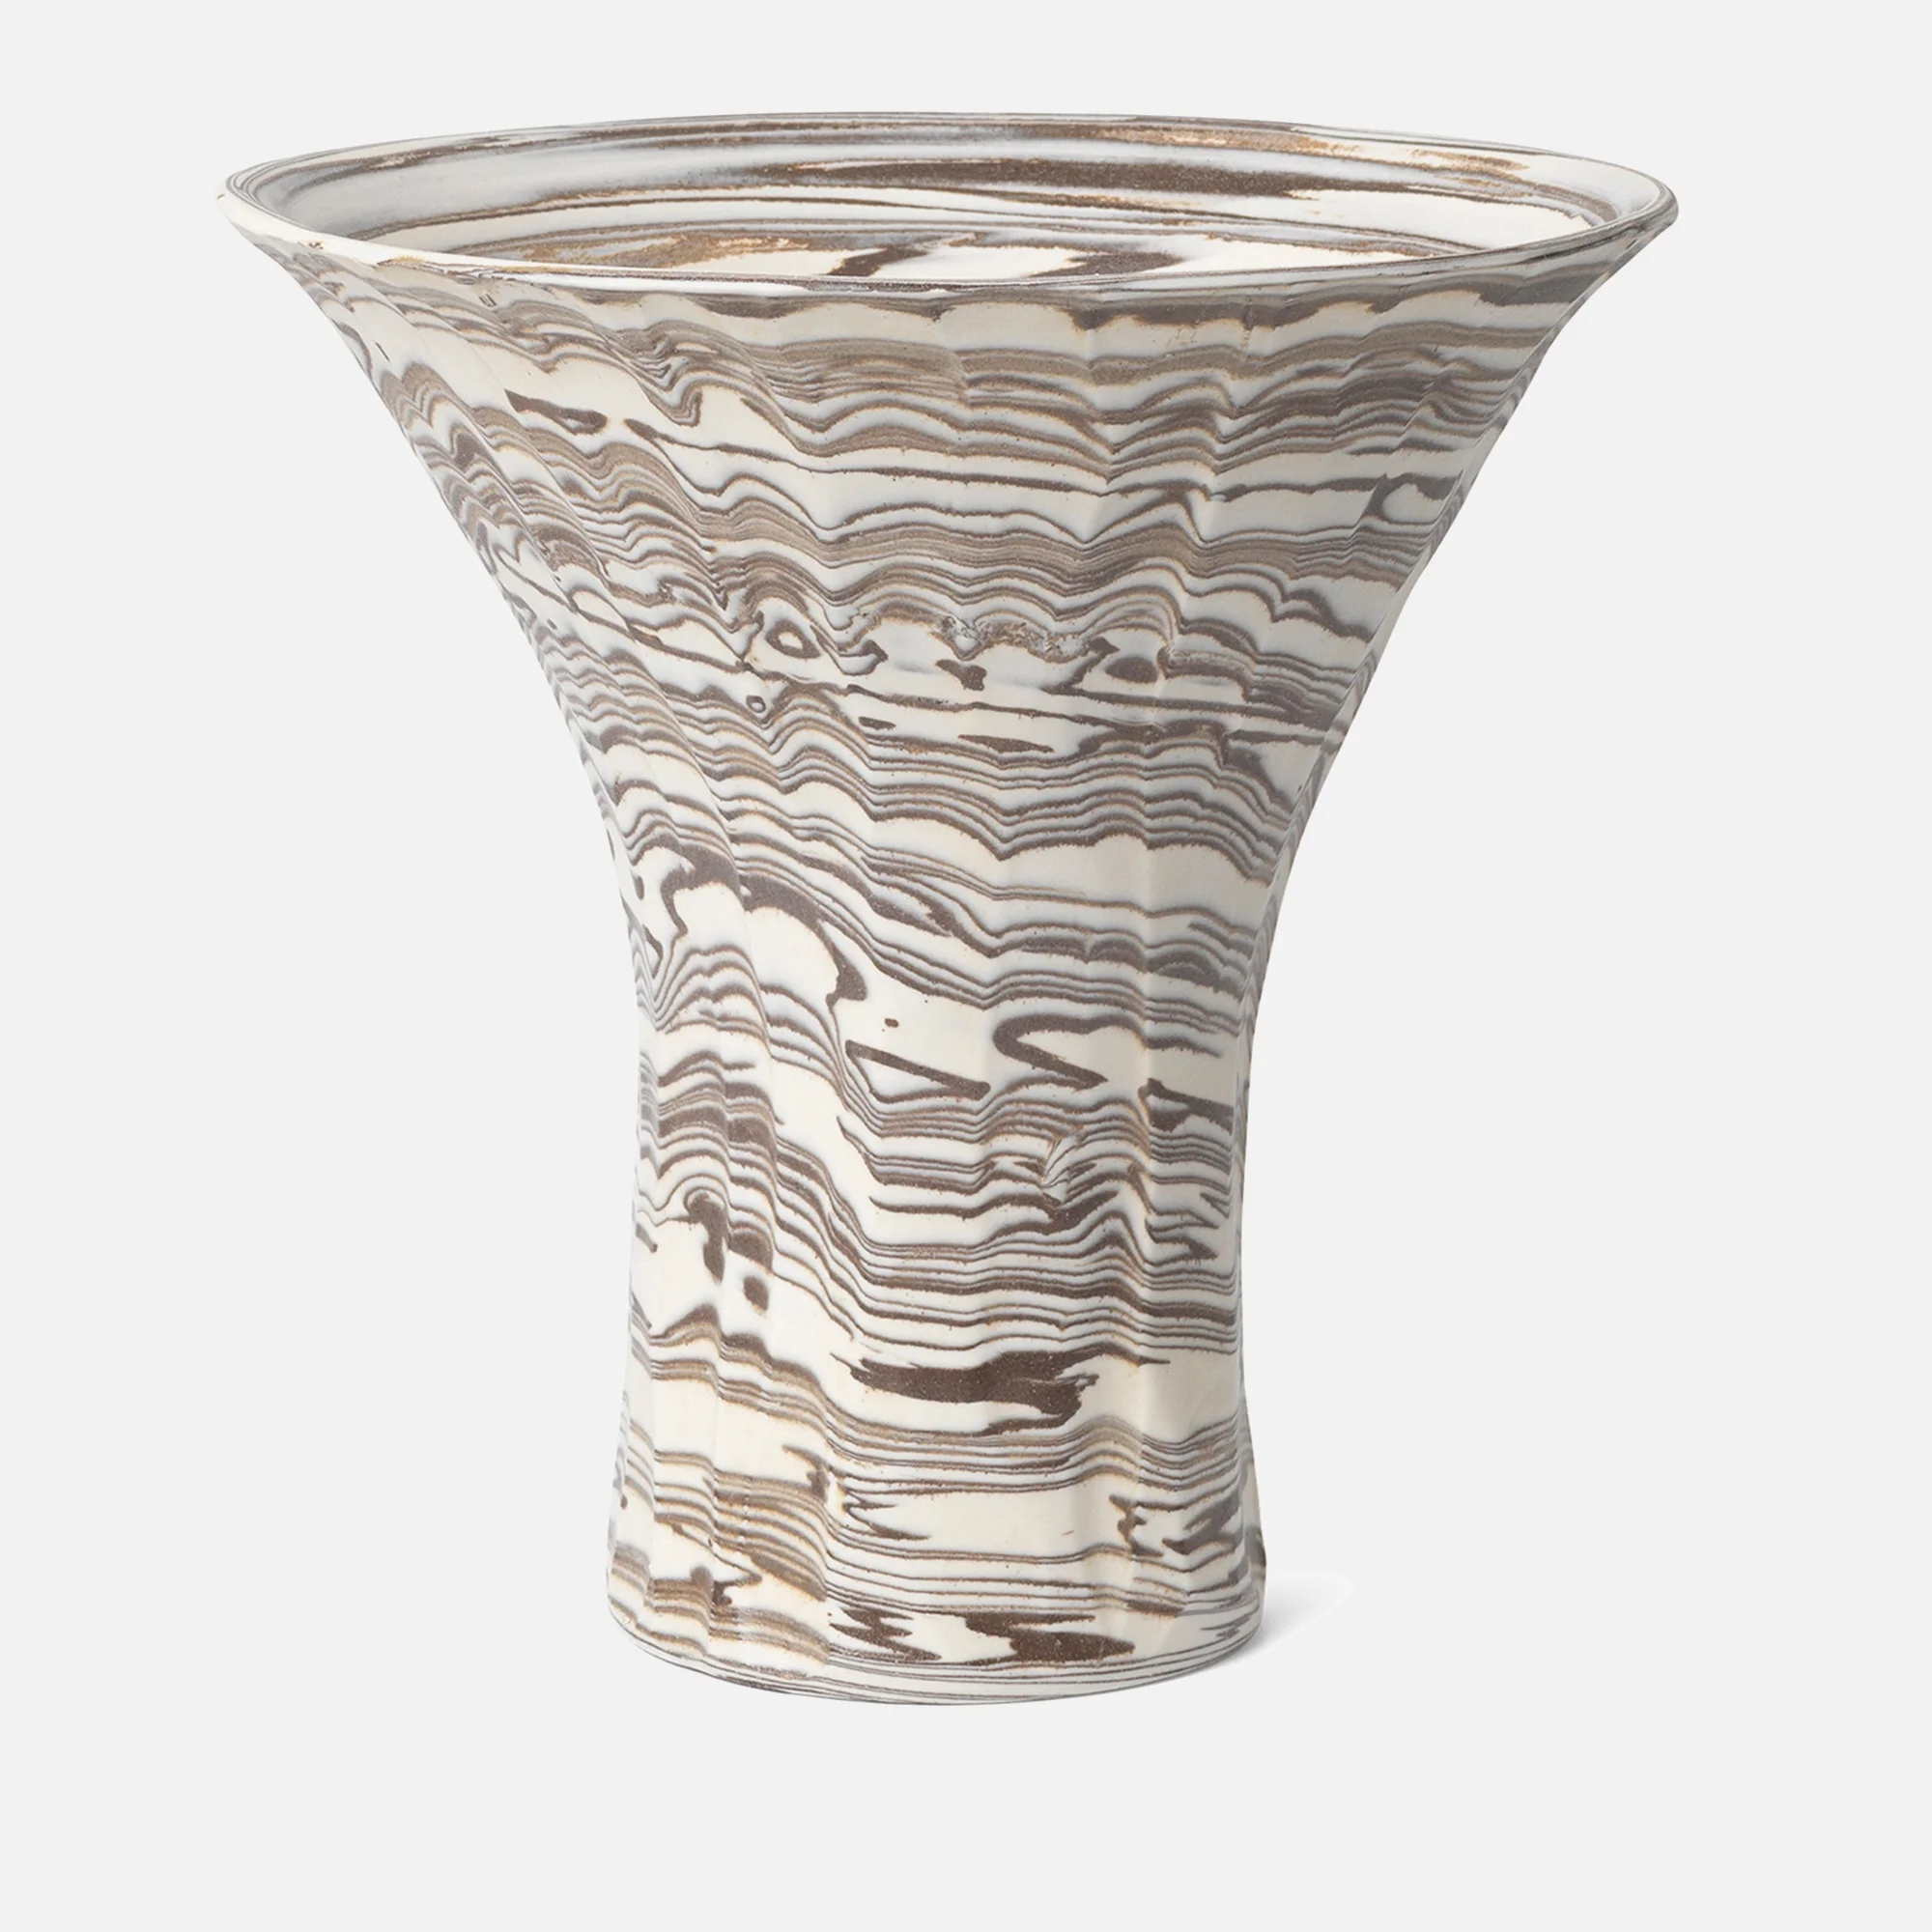 Ferm Living Blend Vase - Large - Natural Image 1